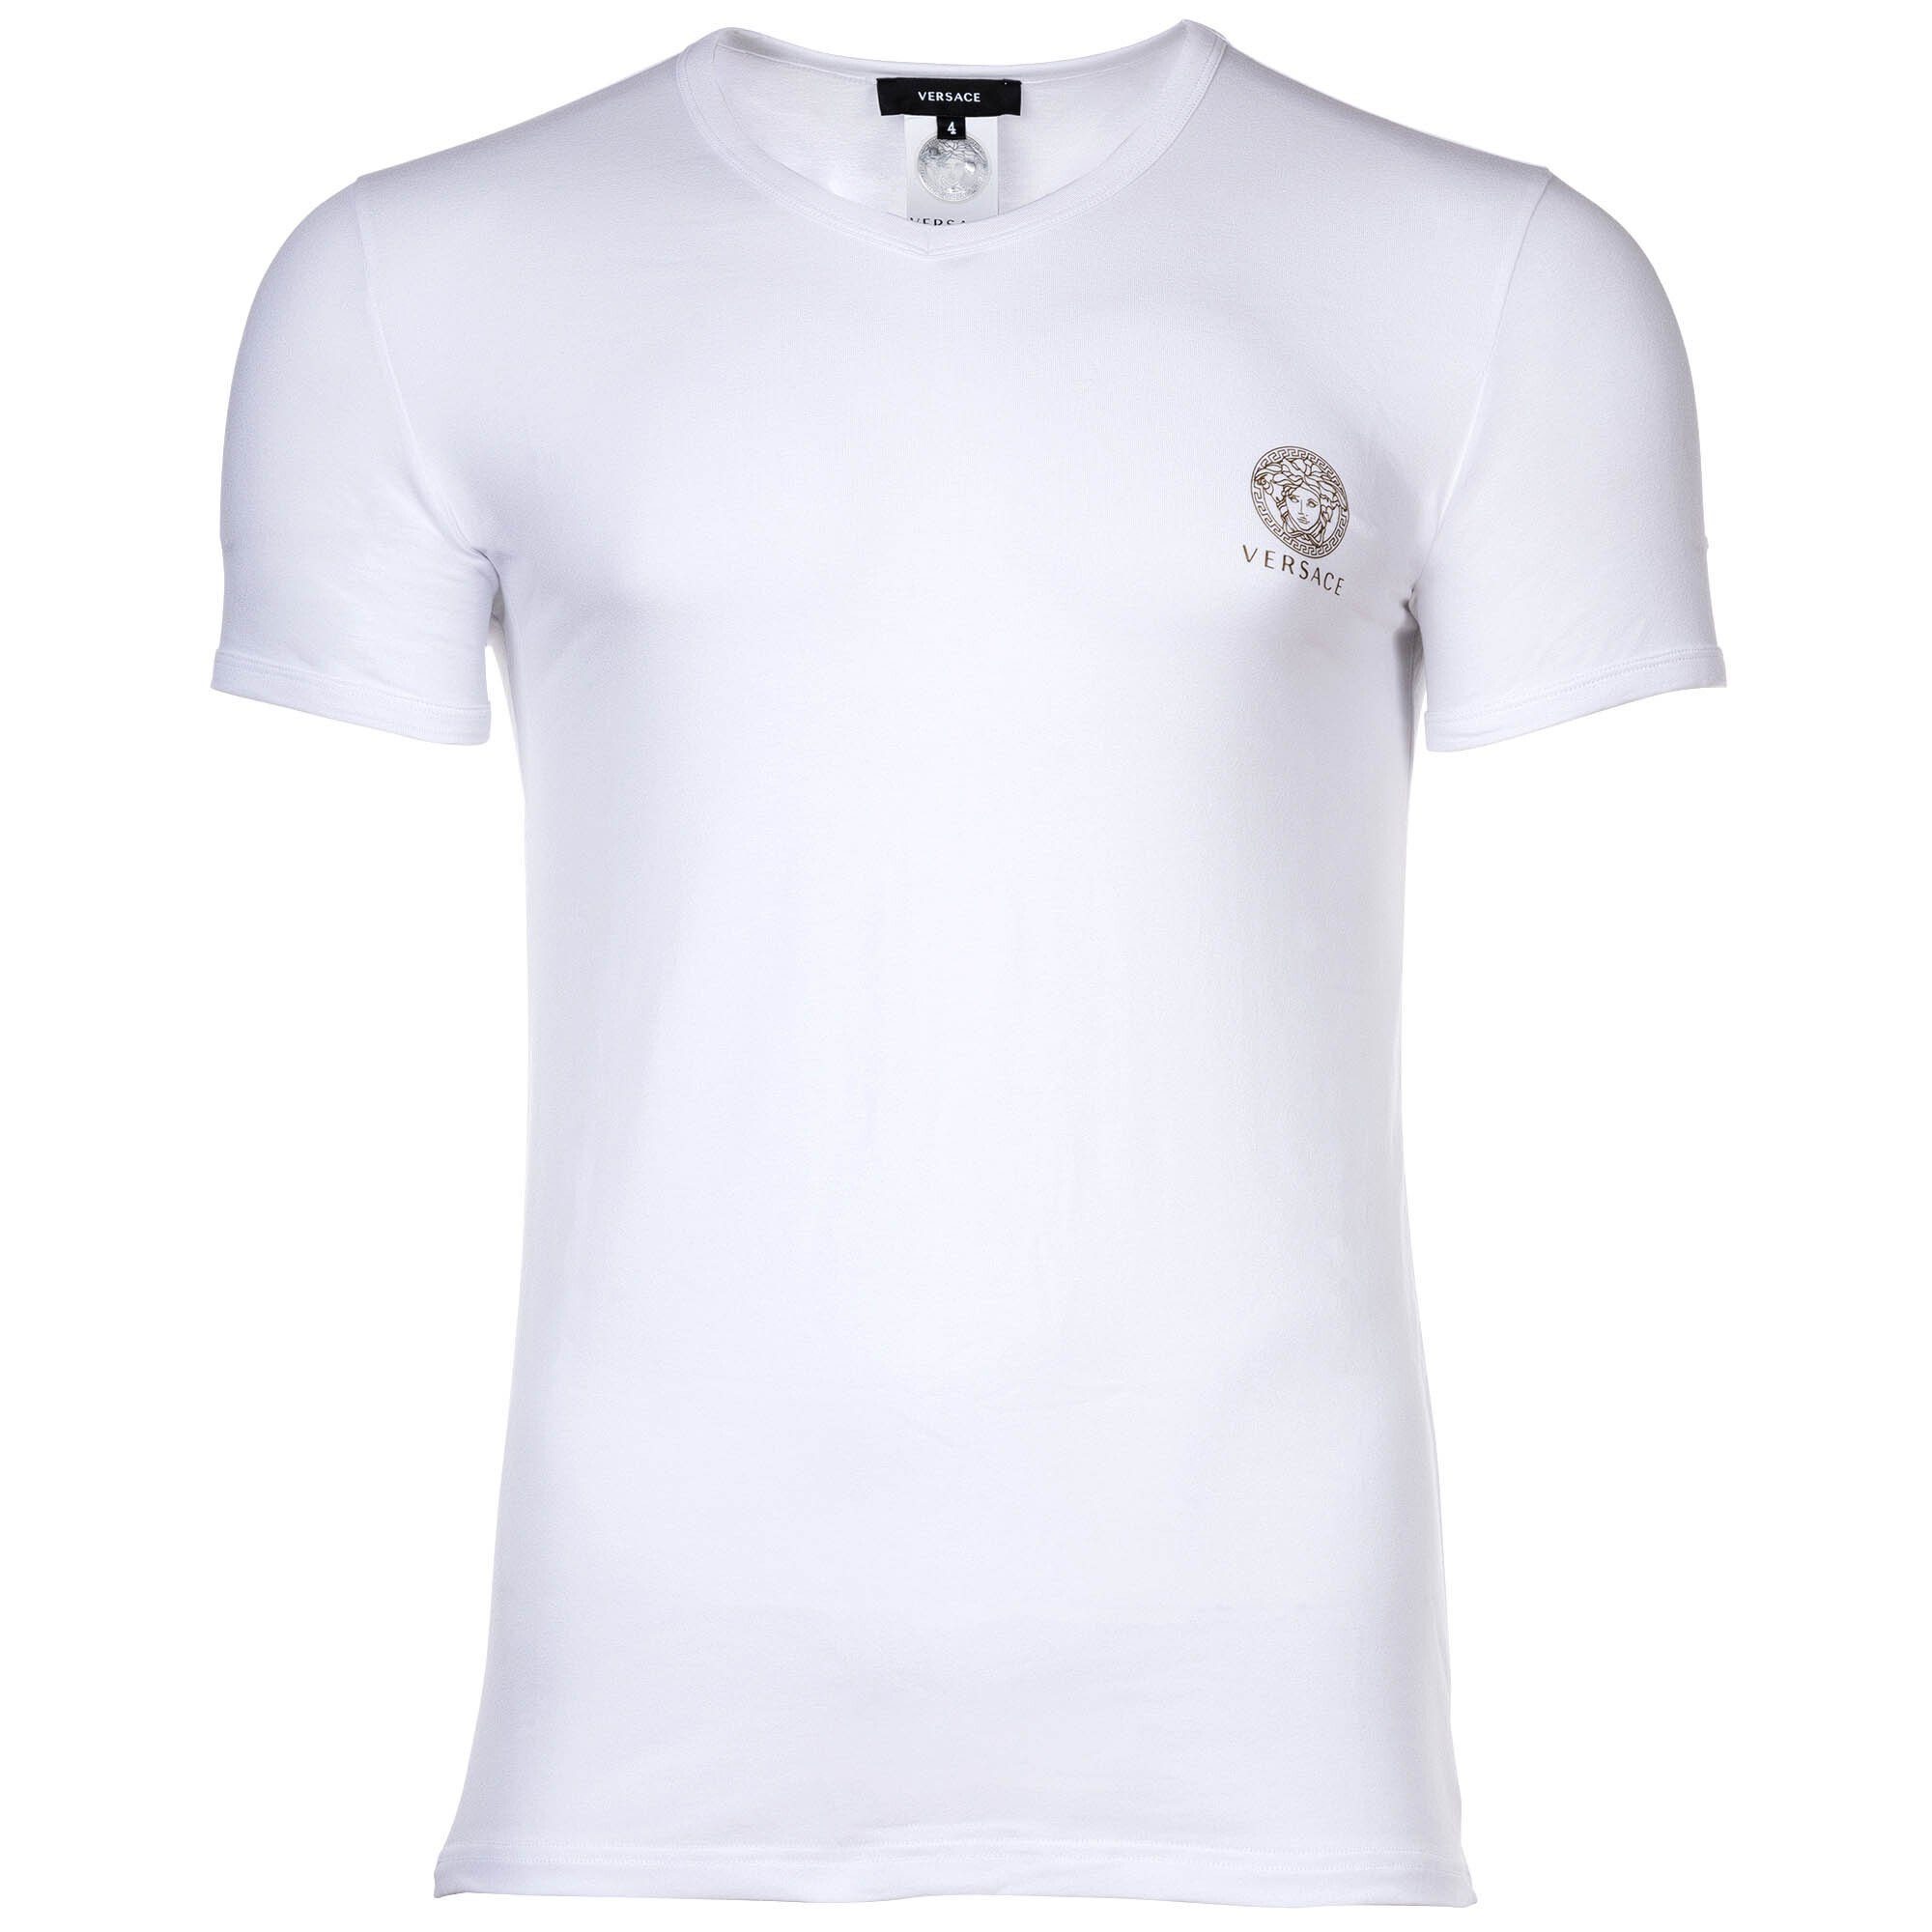 Versace T-Shirt Herren T-Shirt - Unterhemd, V-Ausschnitt, Stretch Weiß